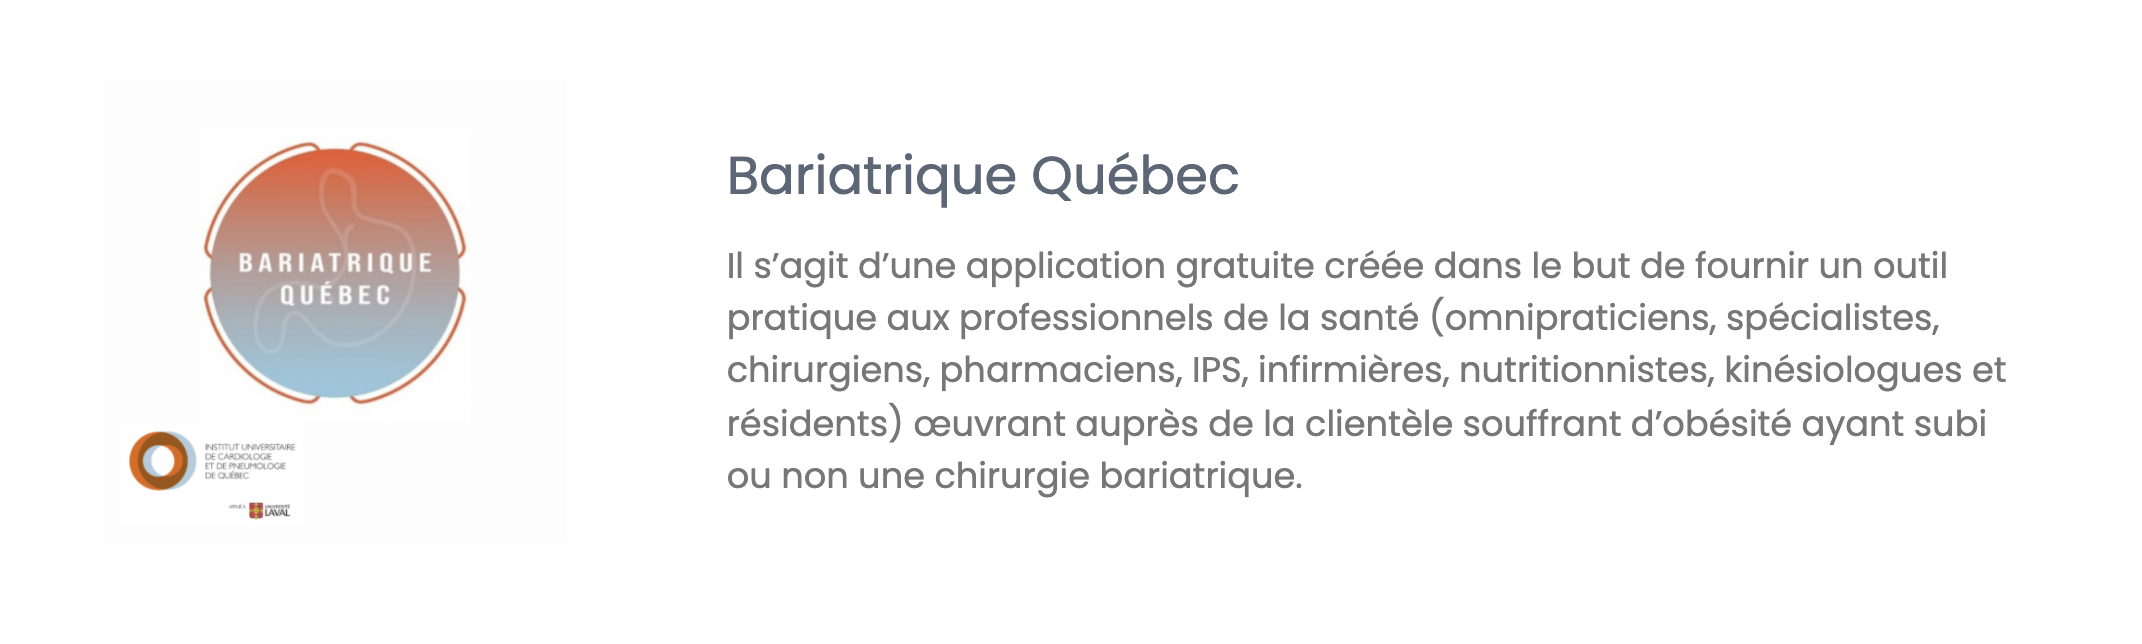 Bariatrique Québec application